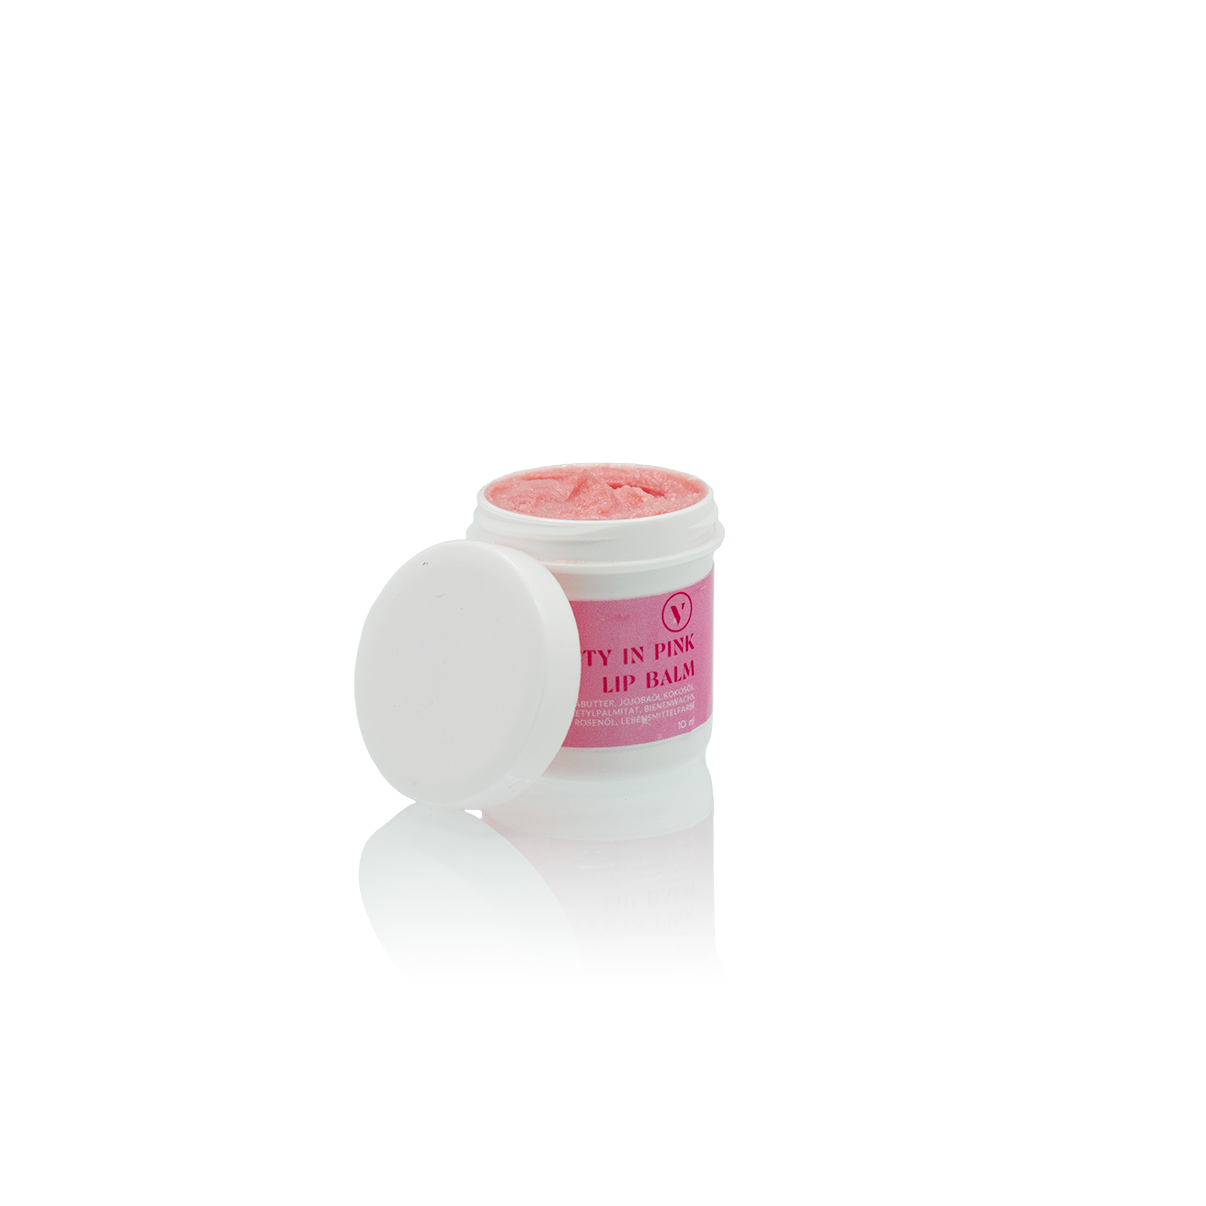 Weißer offener Kunststofftiegel mit weißem, angelehnten Deckel im Vordergrund. Im Tiegel sieht man den rosaroten Lip  Balm für gepflegte Lippen.